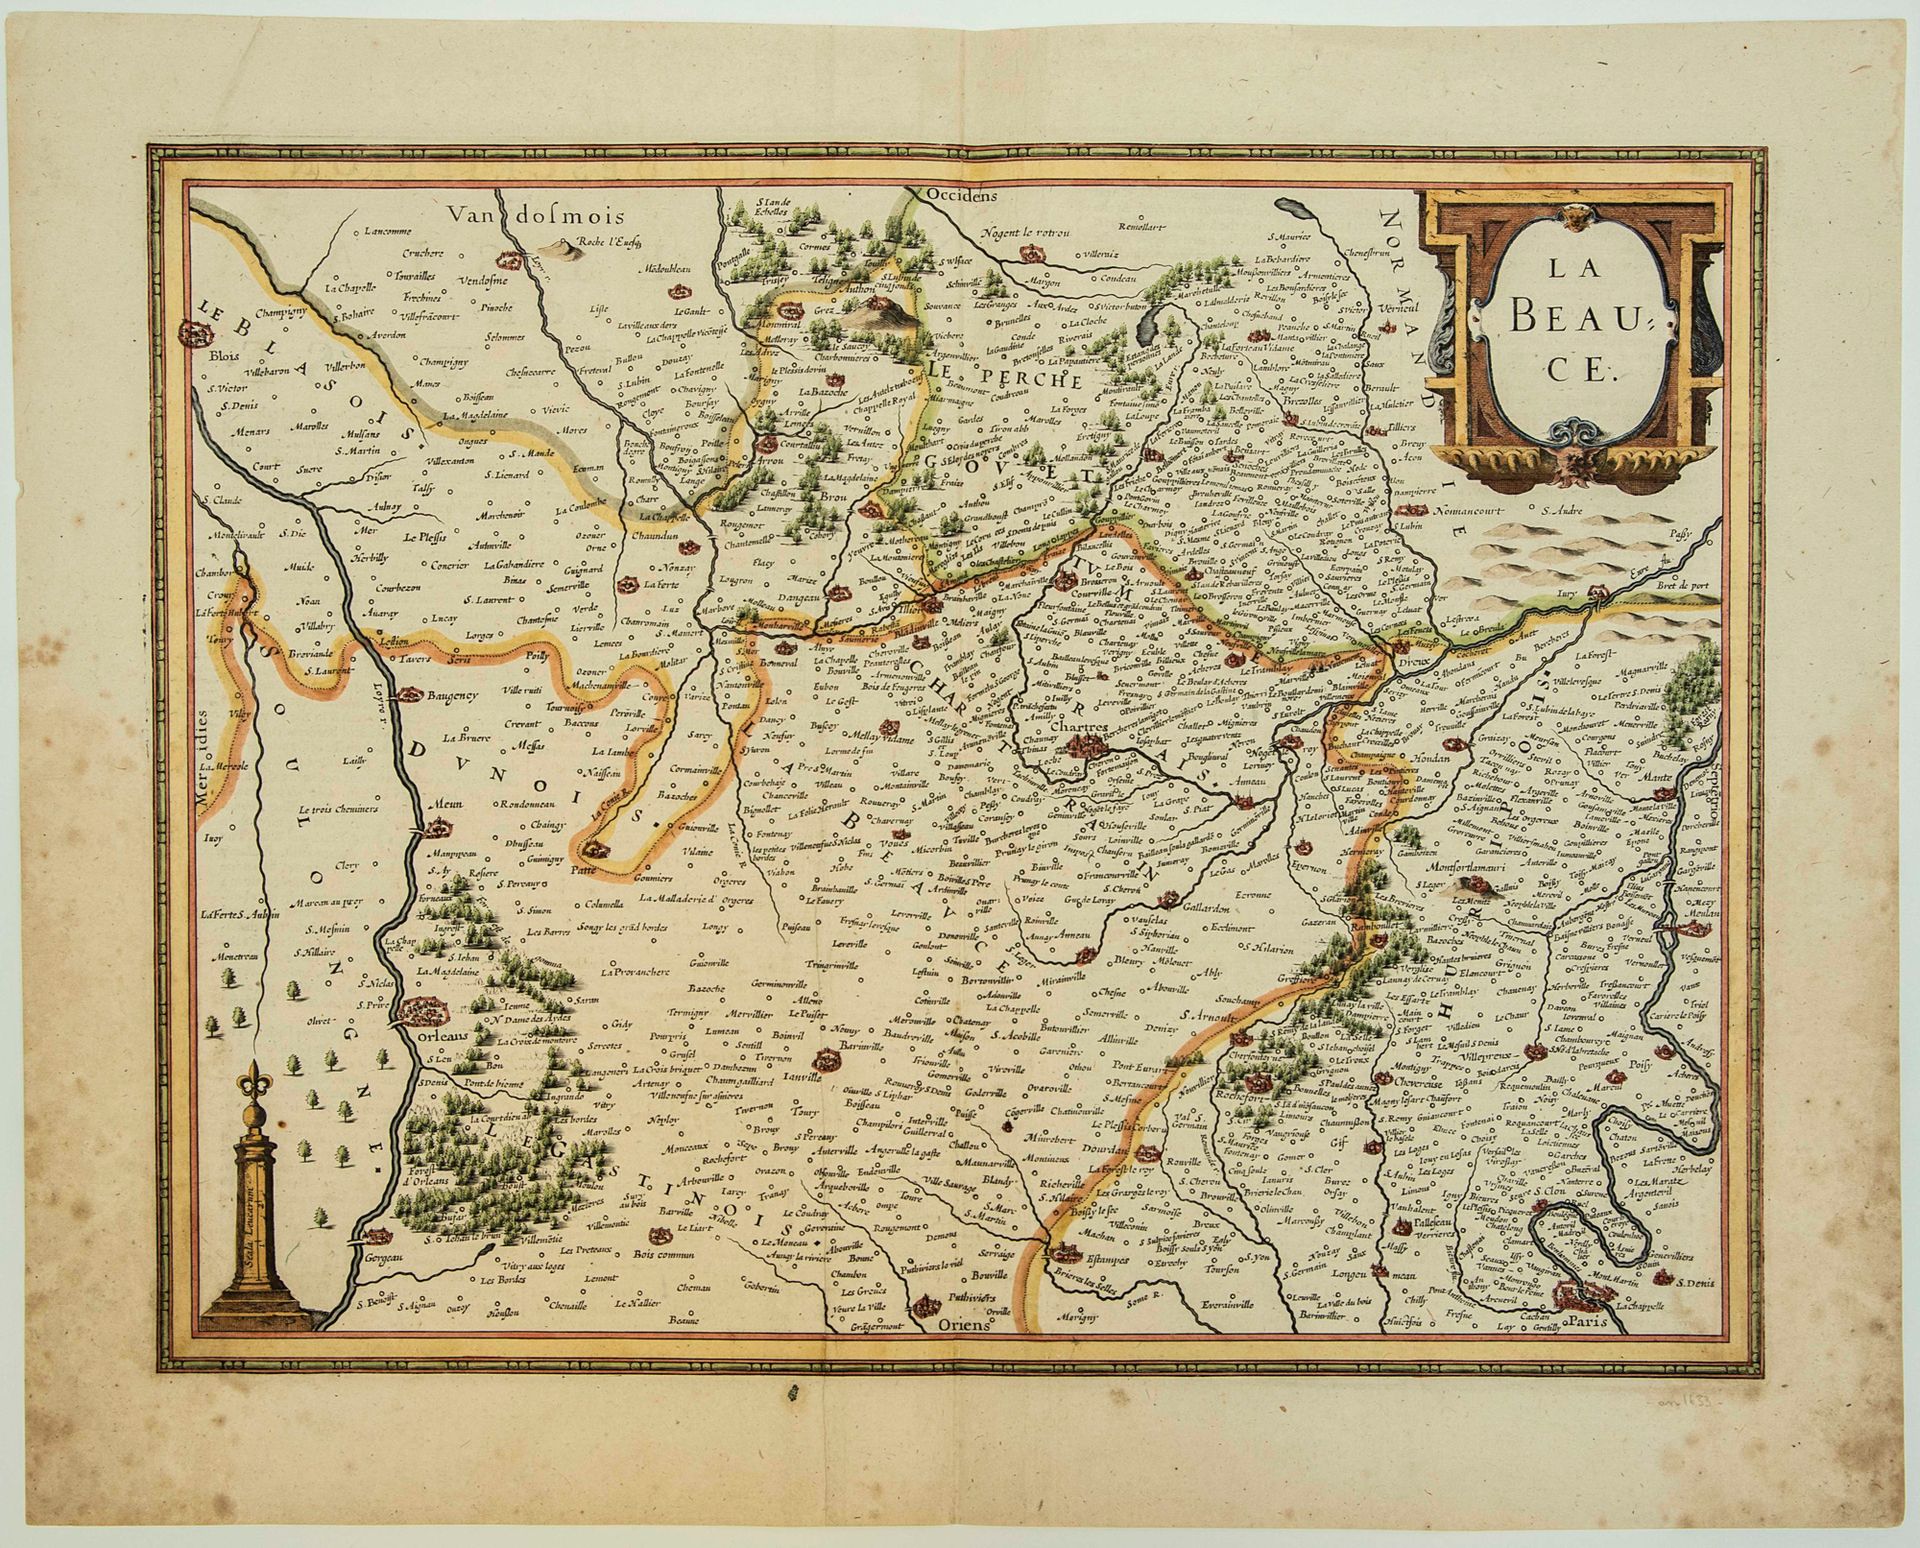 Null MAPPA XVII: "LA BEAUCE" c. 1633 (Orléans, Chartres, Etampes, Rochefort, Par&hellip;